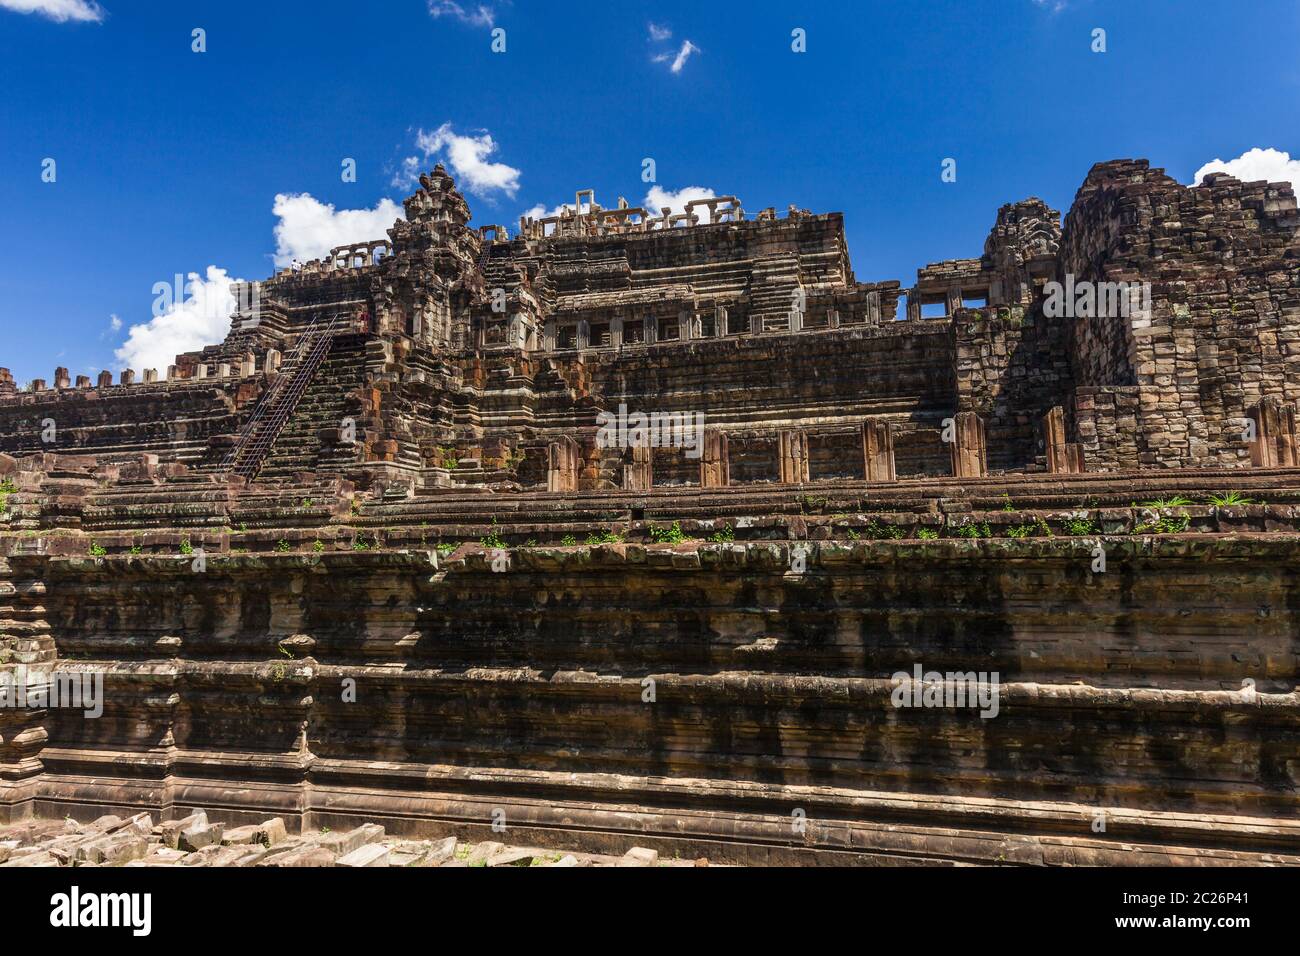 Angkor Thom, Baphuon, ist dreistufiger Tempelberg, alte Hauptstadt des Khmer Reiches, Siem Reap, Kambodscha, Südostasien, Asien Stockfoto